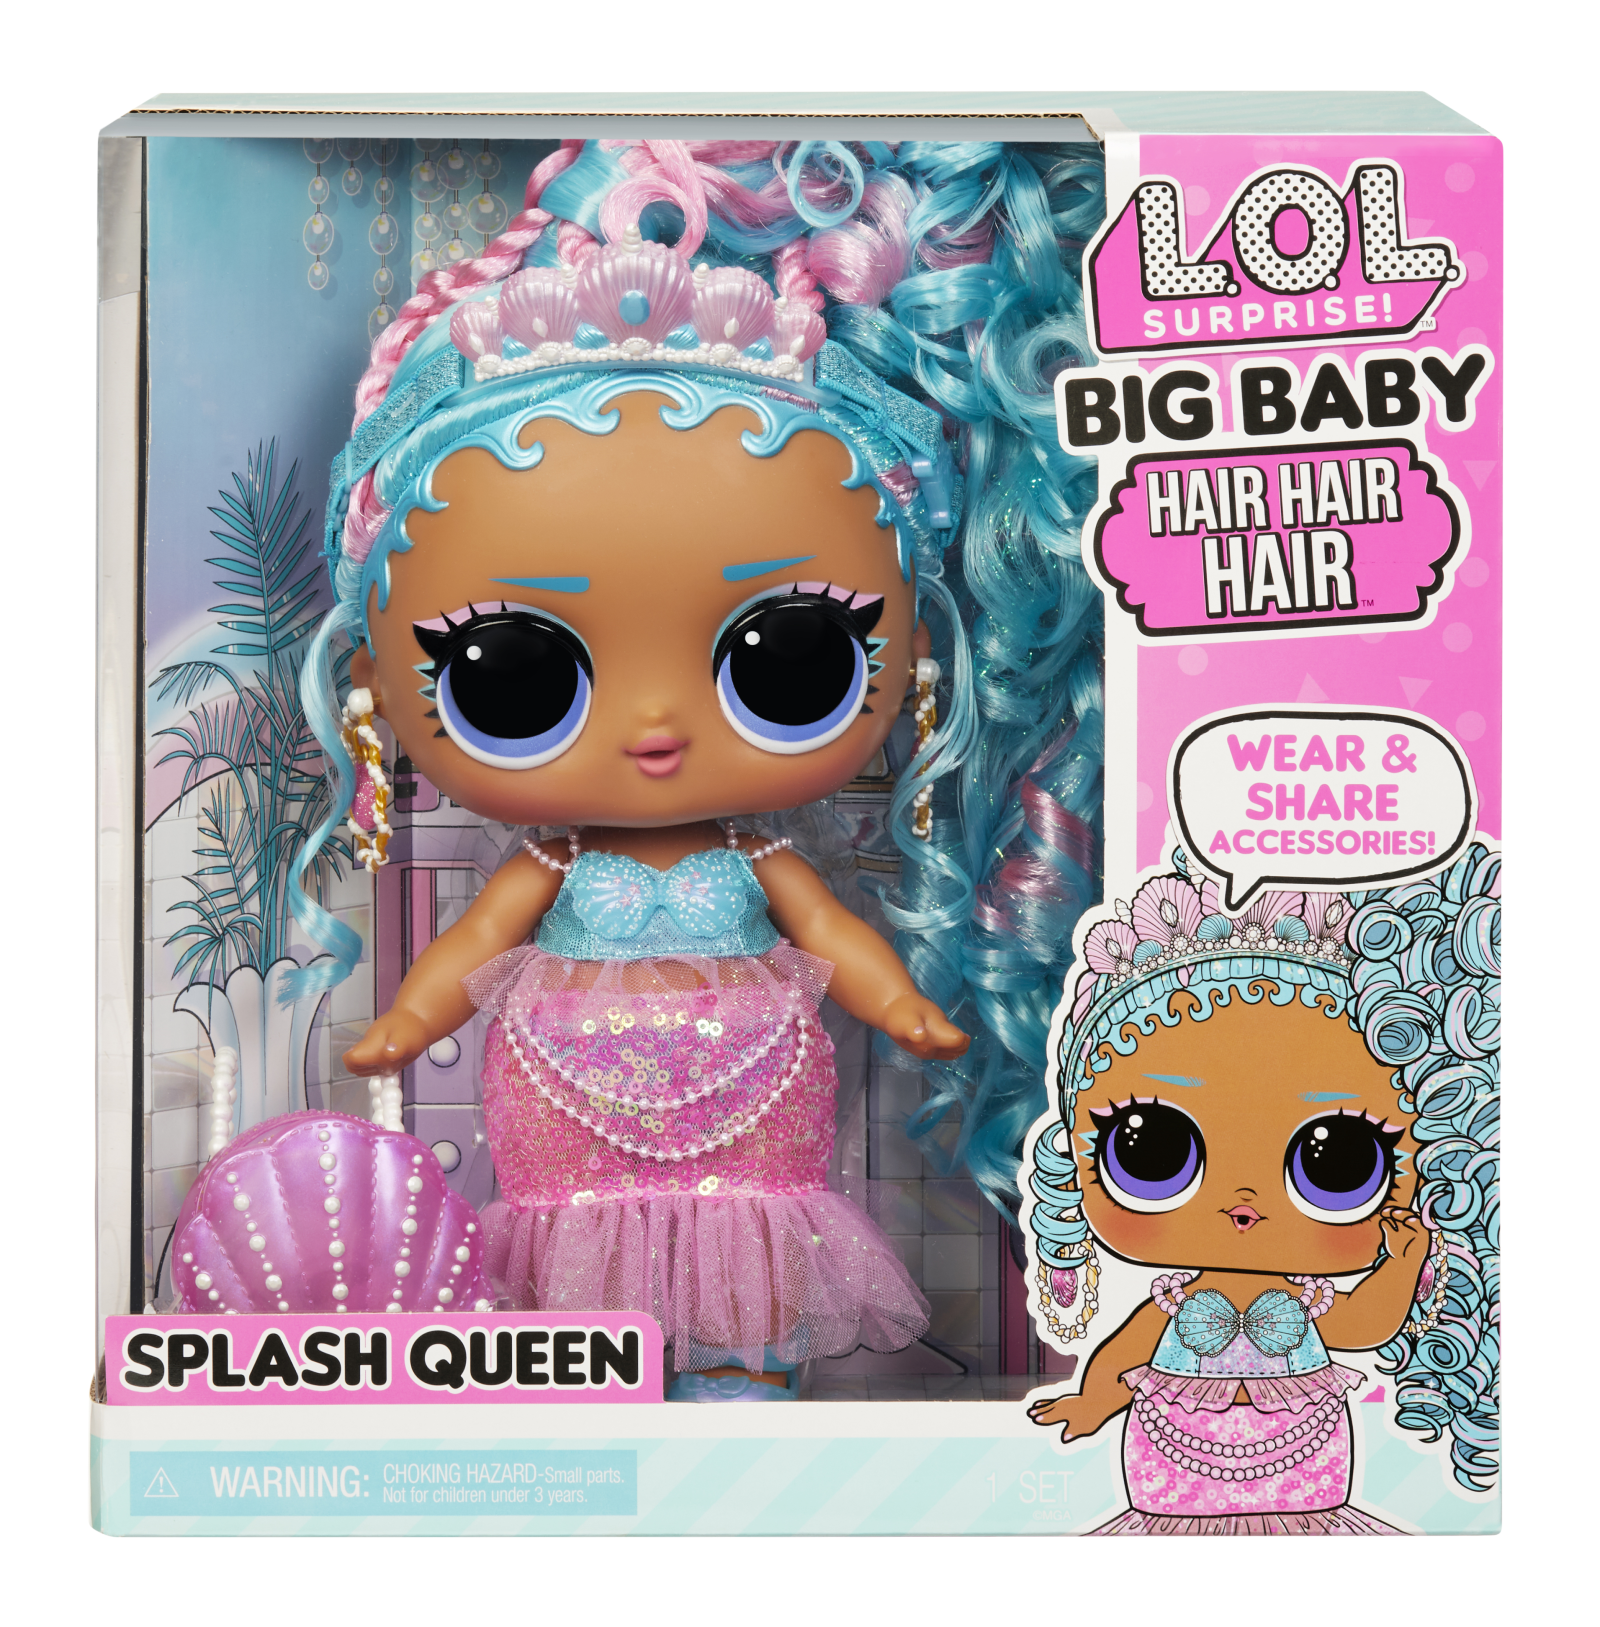 Lol surprise big baby hair hair hair bambola grande - splash queen - bambola da 28cm con 14 sorprese tra cui accessori da condividere - LOL